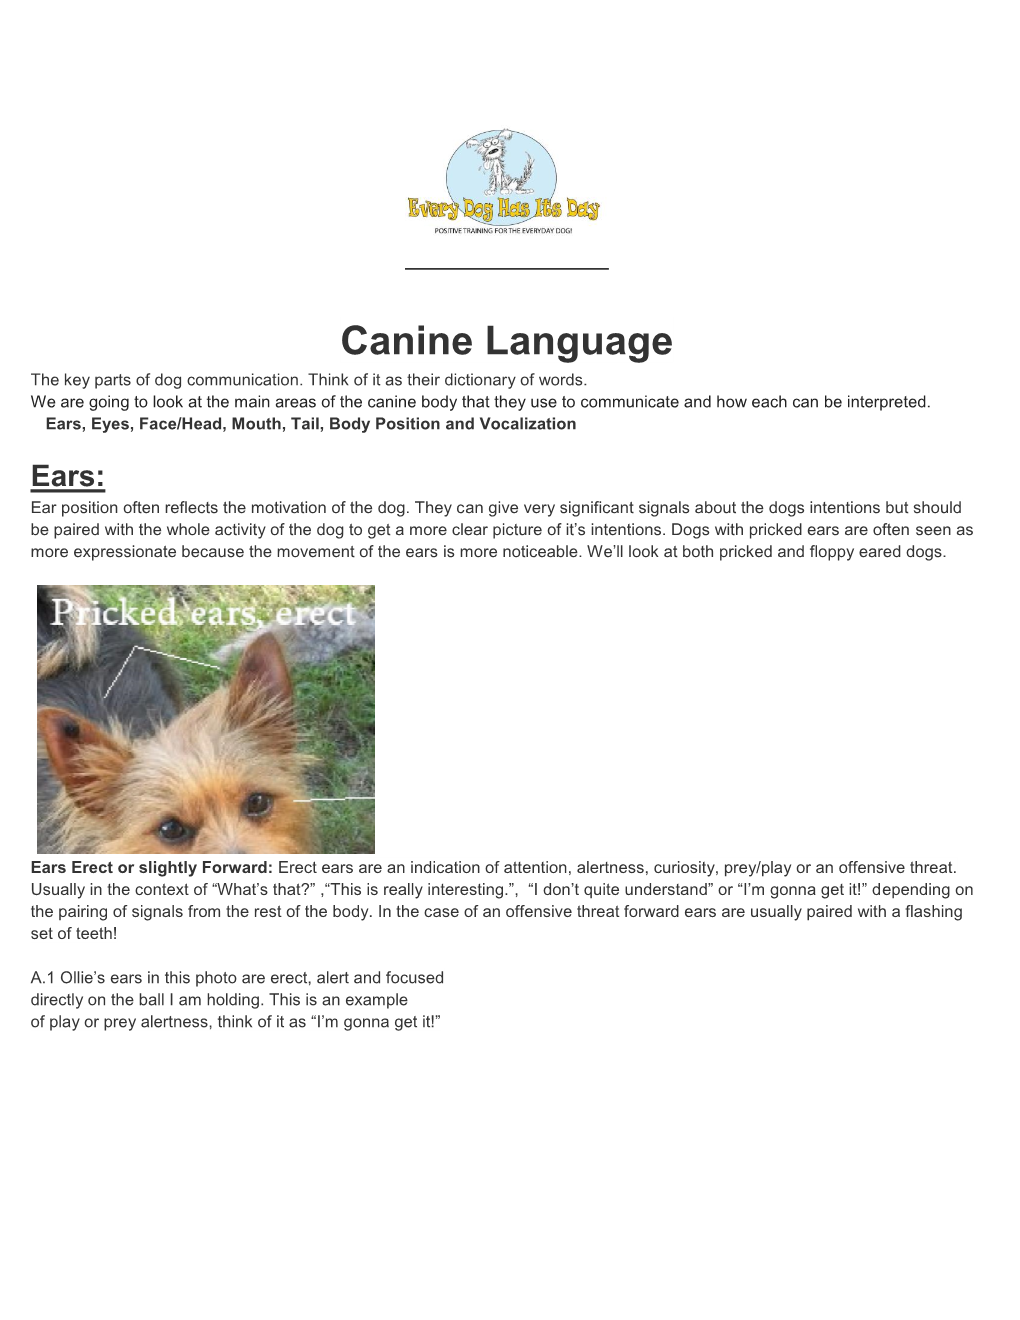 Canine Language the Key Parts of Dog Communication